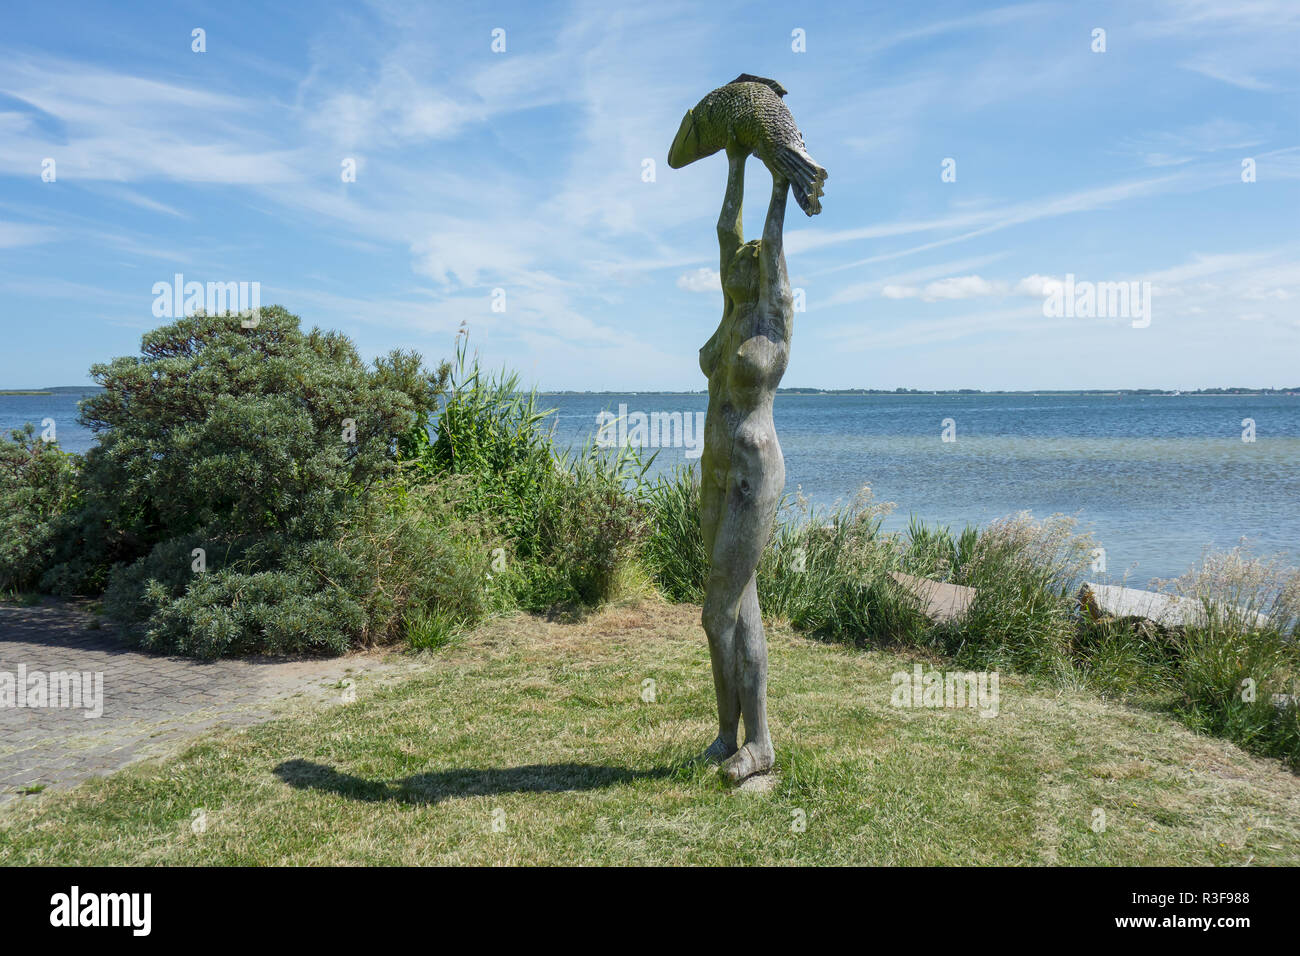 HIDDENSEE, ALLEMAGNE - 20 juin 2017 : statue en bois dans le port de l'île de Hiddensee Banque D'Images